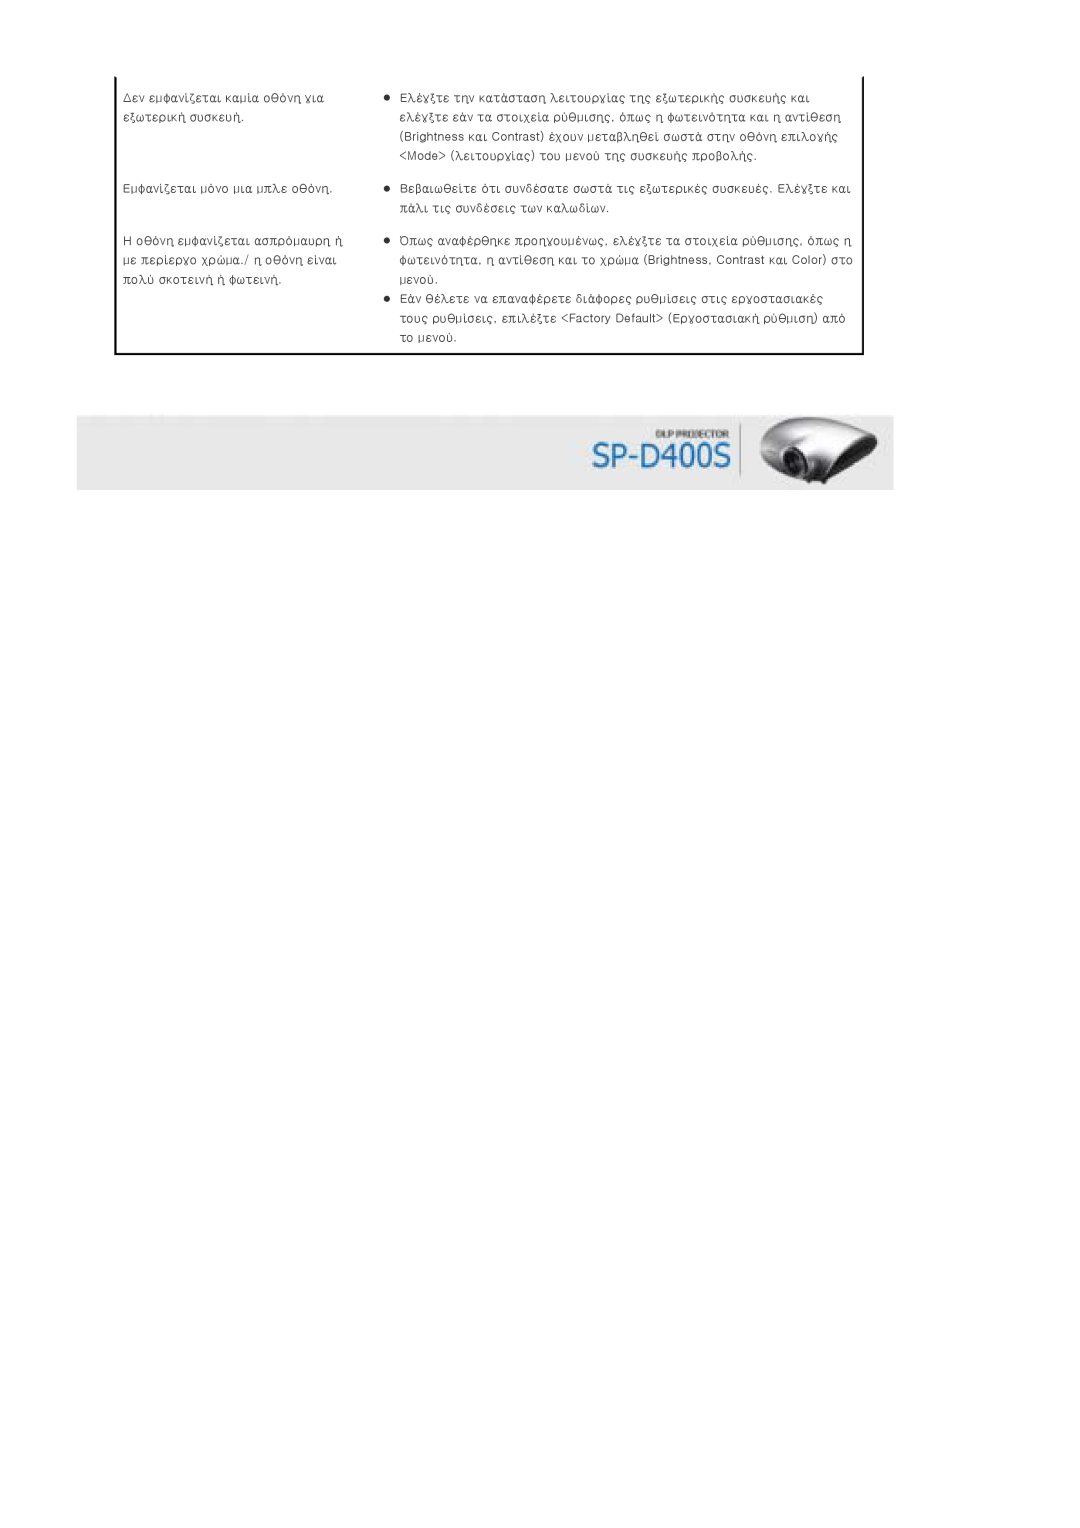 Samsung SPD400SX/EN, SPD400SFX/EN manual Δεν εμφανίζεται καμία οθόνη για εξωτερική συσκευή, Εμφανίζεται μόνο μια μπλε οθόνη 